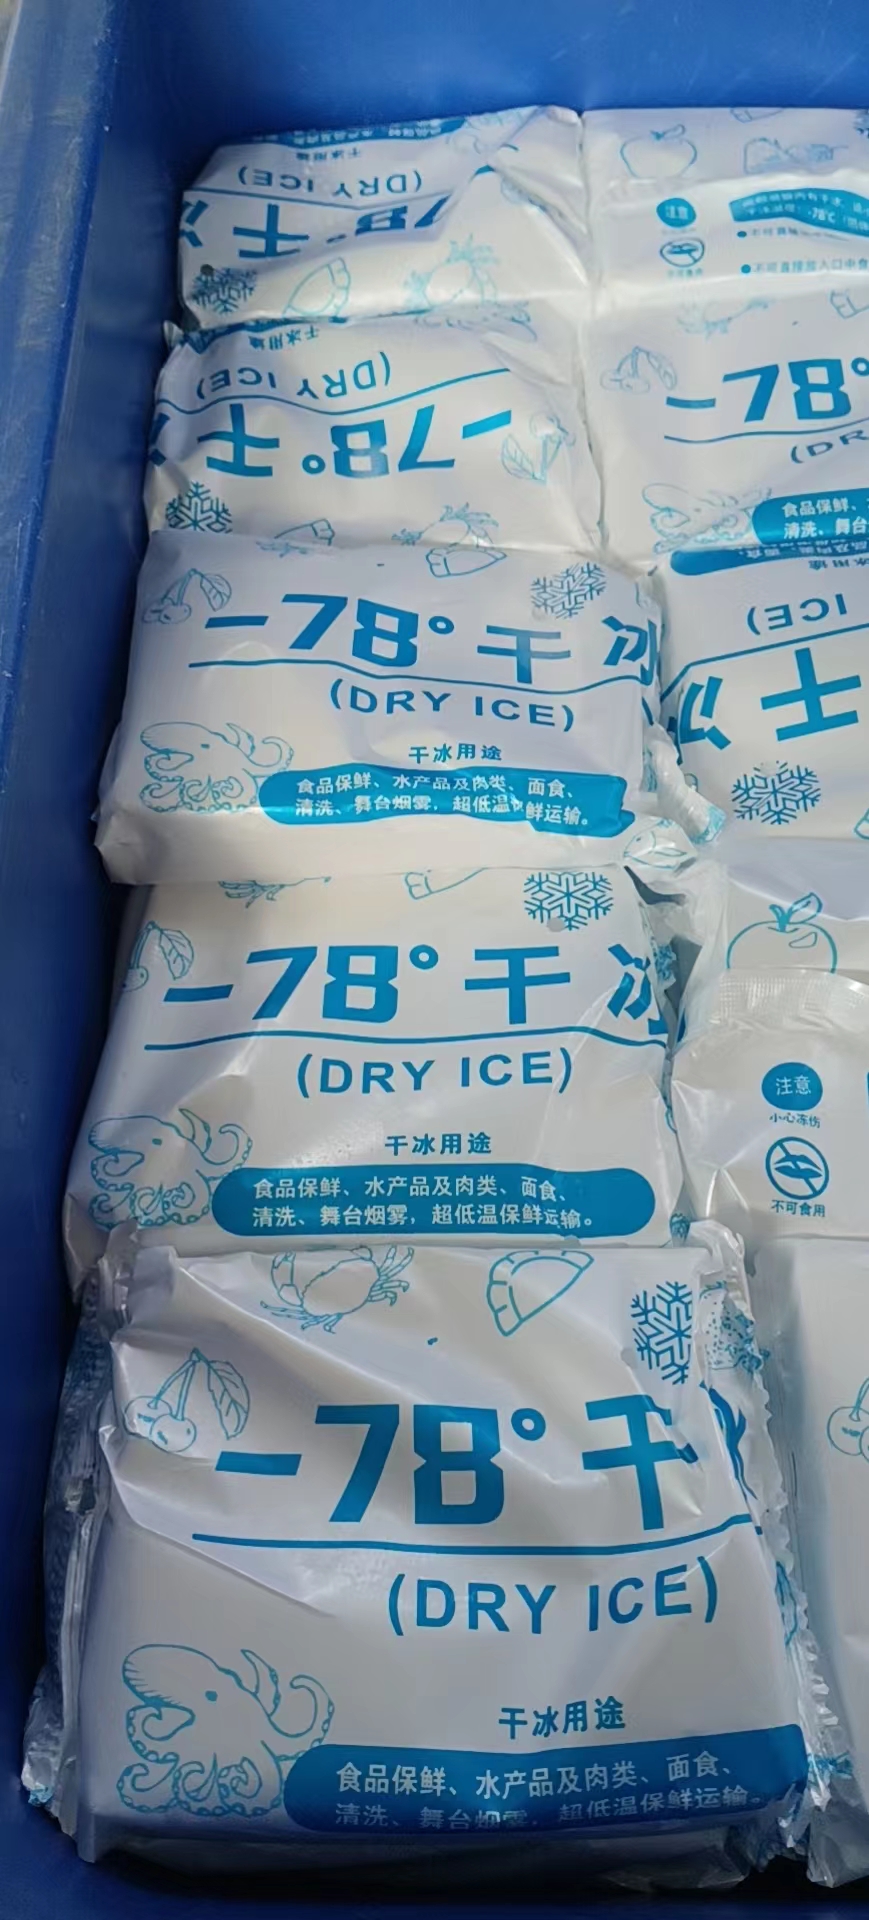 馆陶县供应-78°干冰配送供应商哪里有、批发市场、厂家哪里有、销售